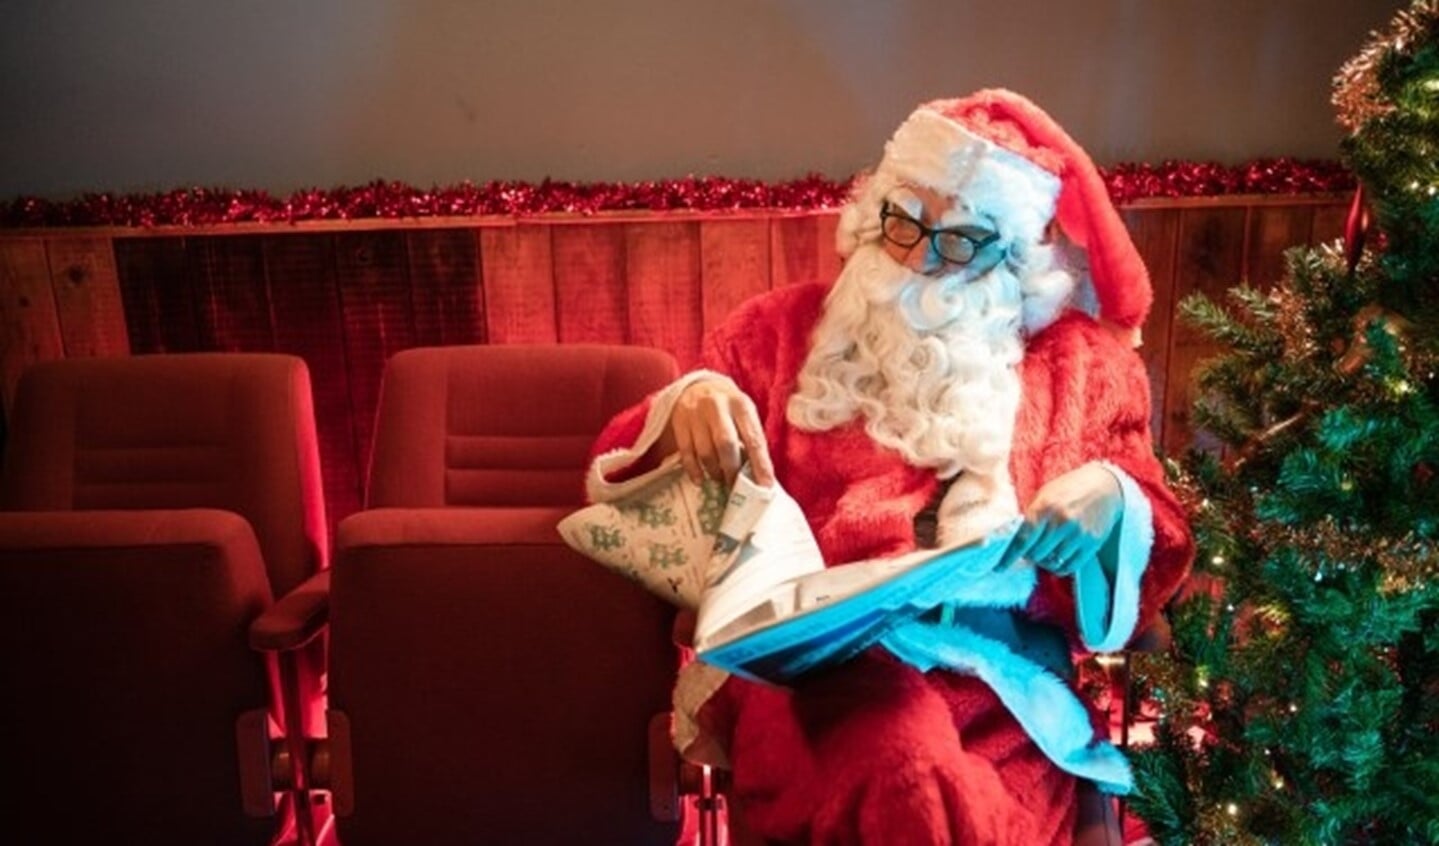 Frank Lammers acteert als kerstman in de kerstfilm, die zo'n twintig minuten duurt. Joep Vermolen speelt de hoofdrol. 